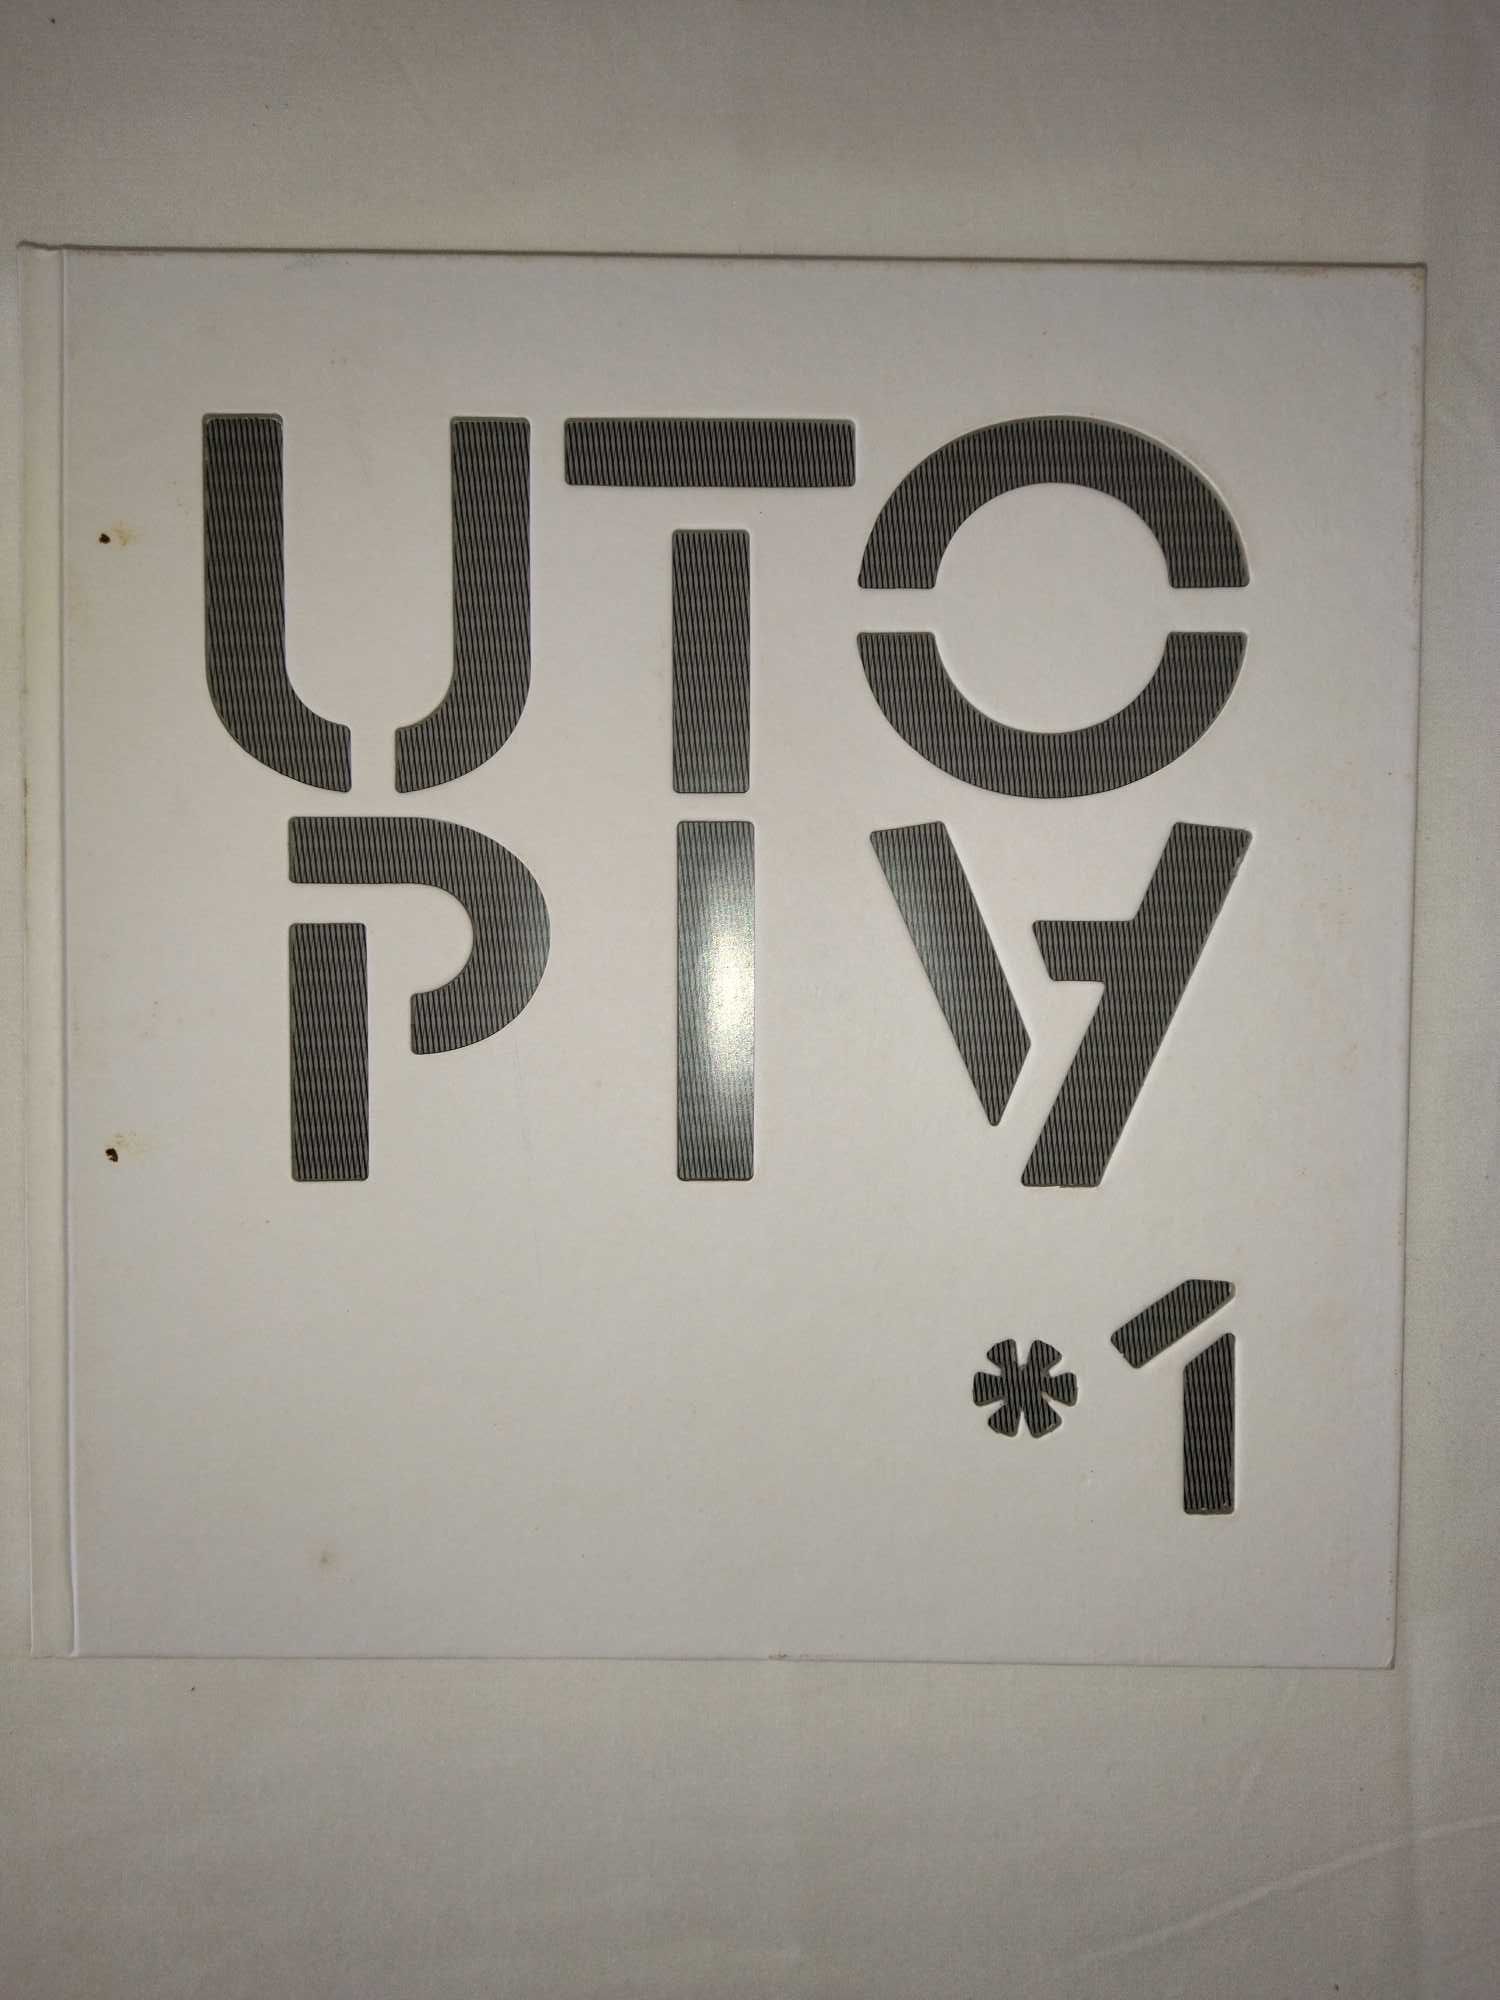 RARO | Utopia, n.1, coord. arq. Manuel Aires Mateus